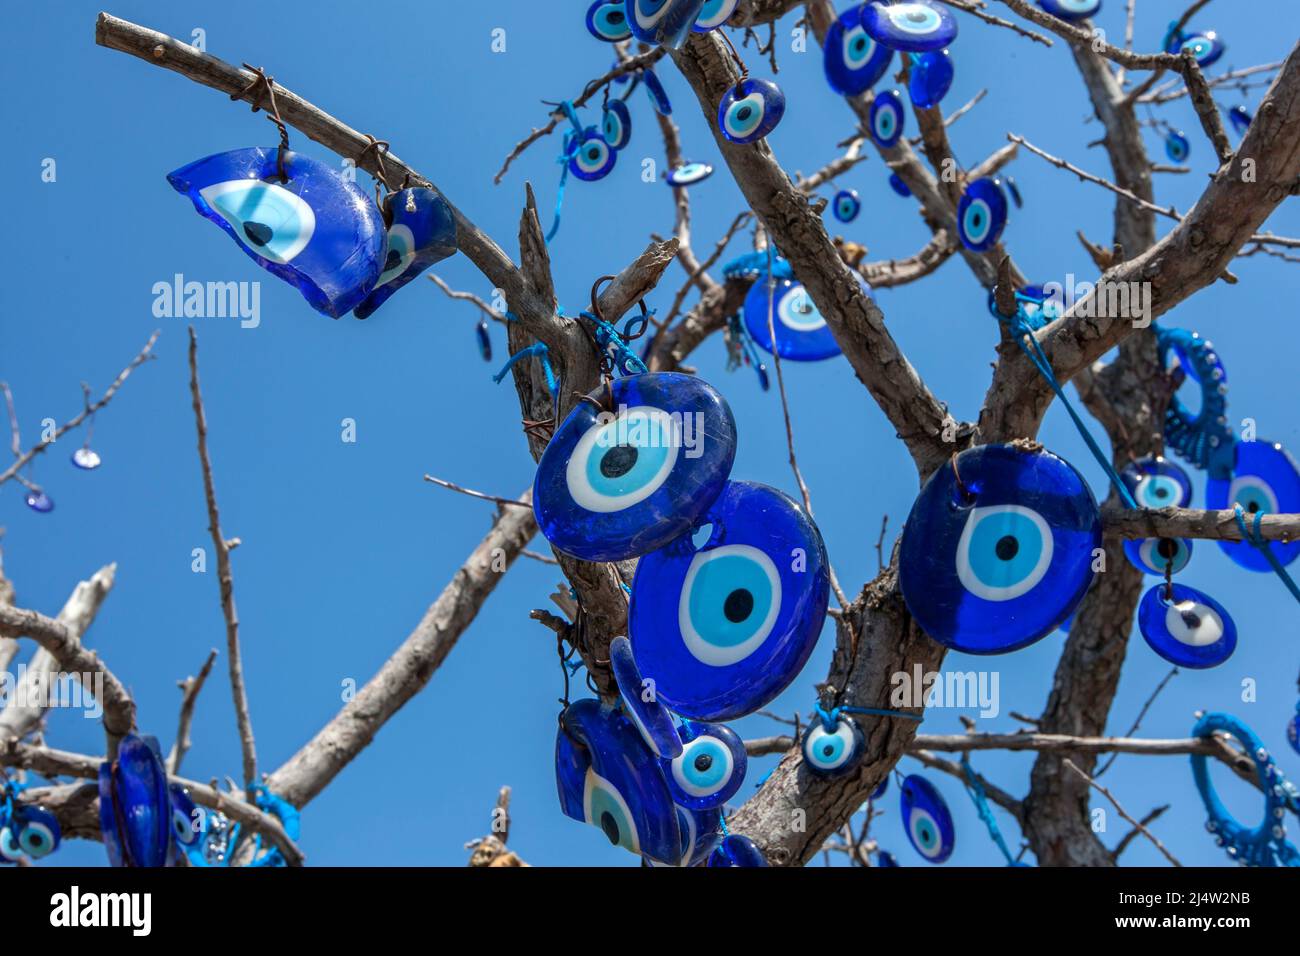 Les Nazars pendent d'un arbre à Pigeon Valley à Uchisar en Turquie. Un nazar est un amulet en forme d'oeil que l'on croit protéger contre l'oeil mauvais. Banque D'Images